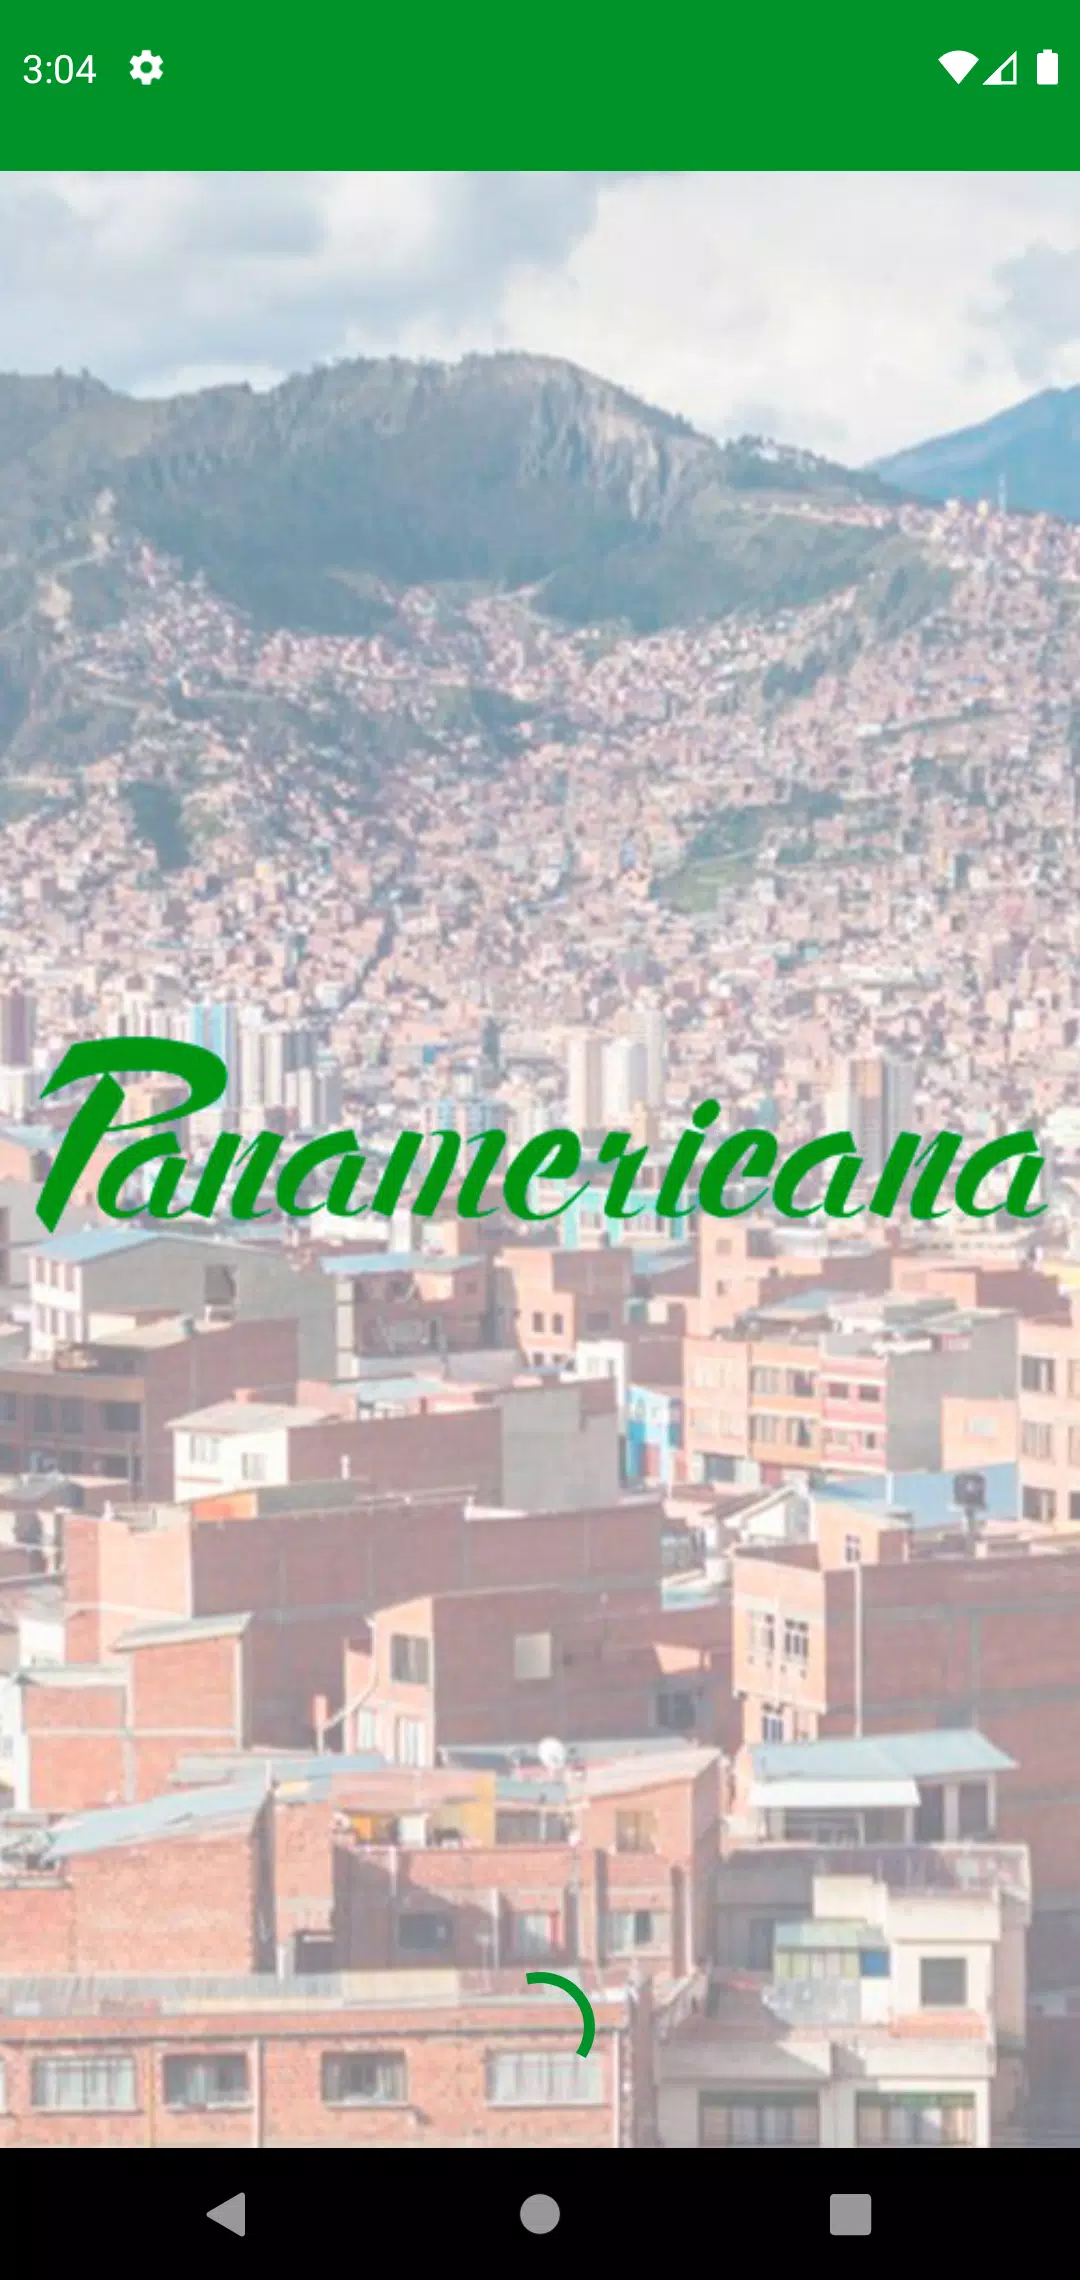 Radio Panamericana Bolivia pour Android - Téléchargez l'APK